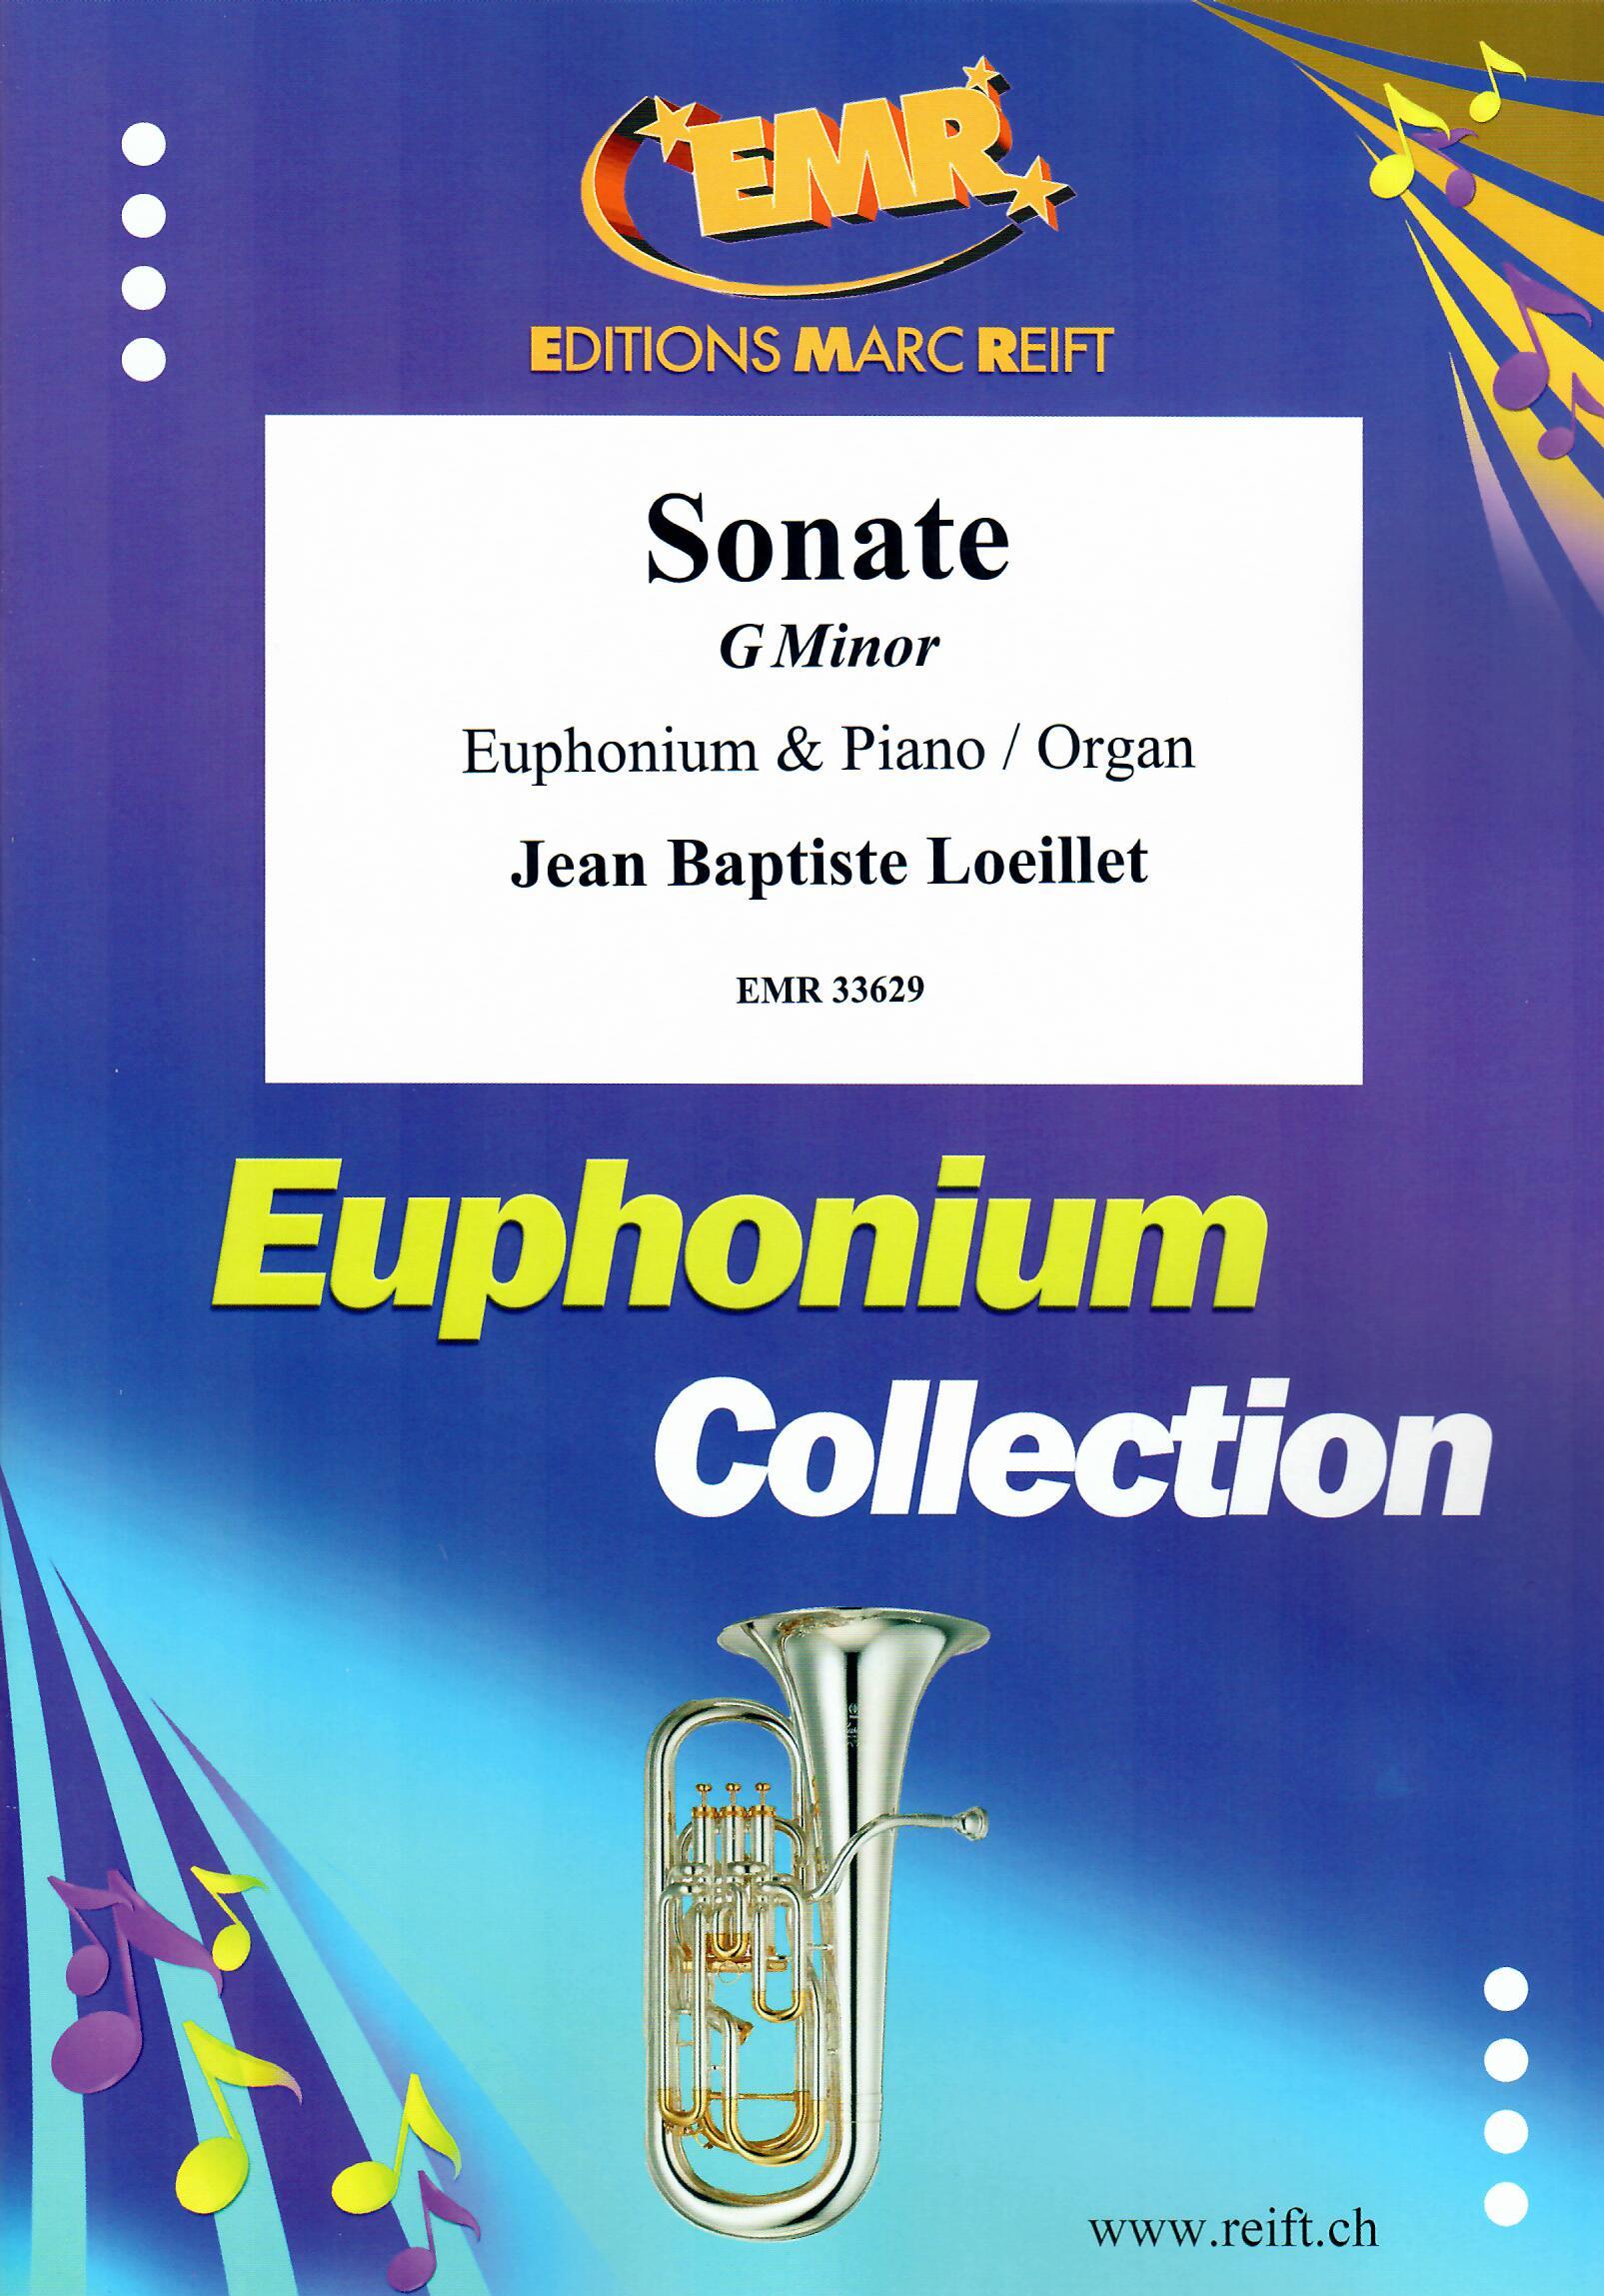 SONATE G MINOR, SOLOS - Euphonium